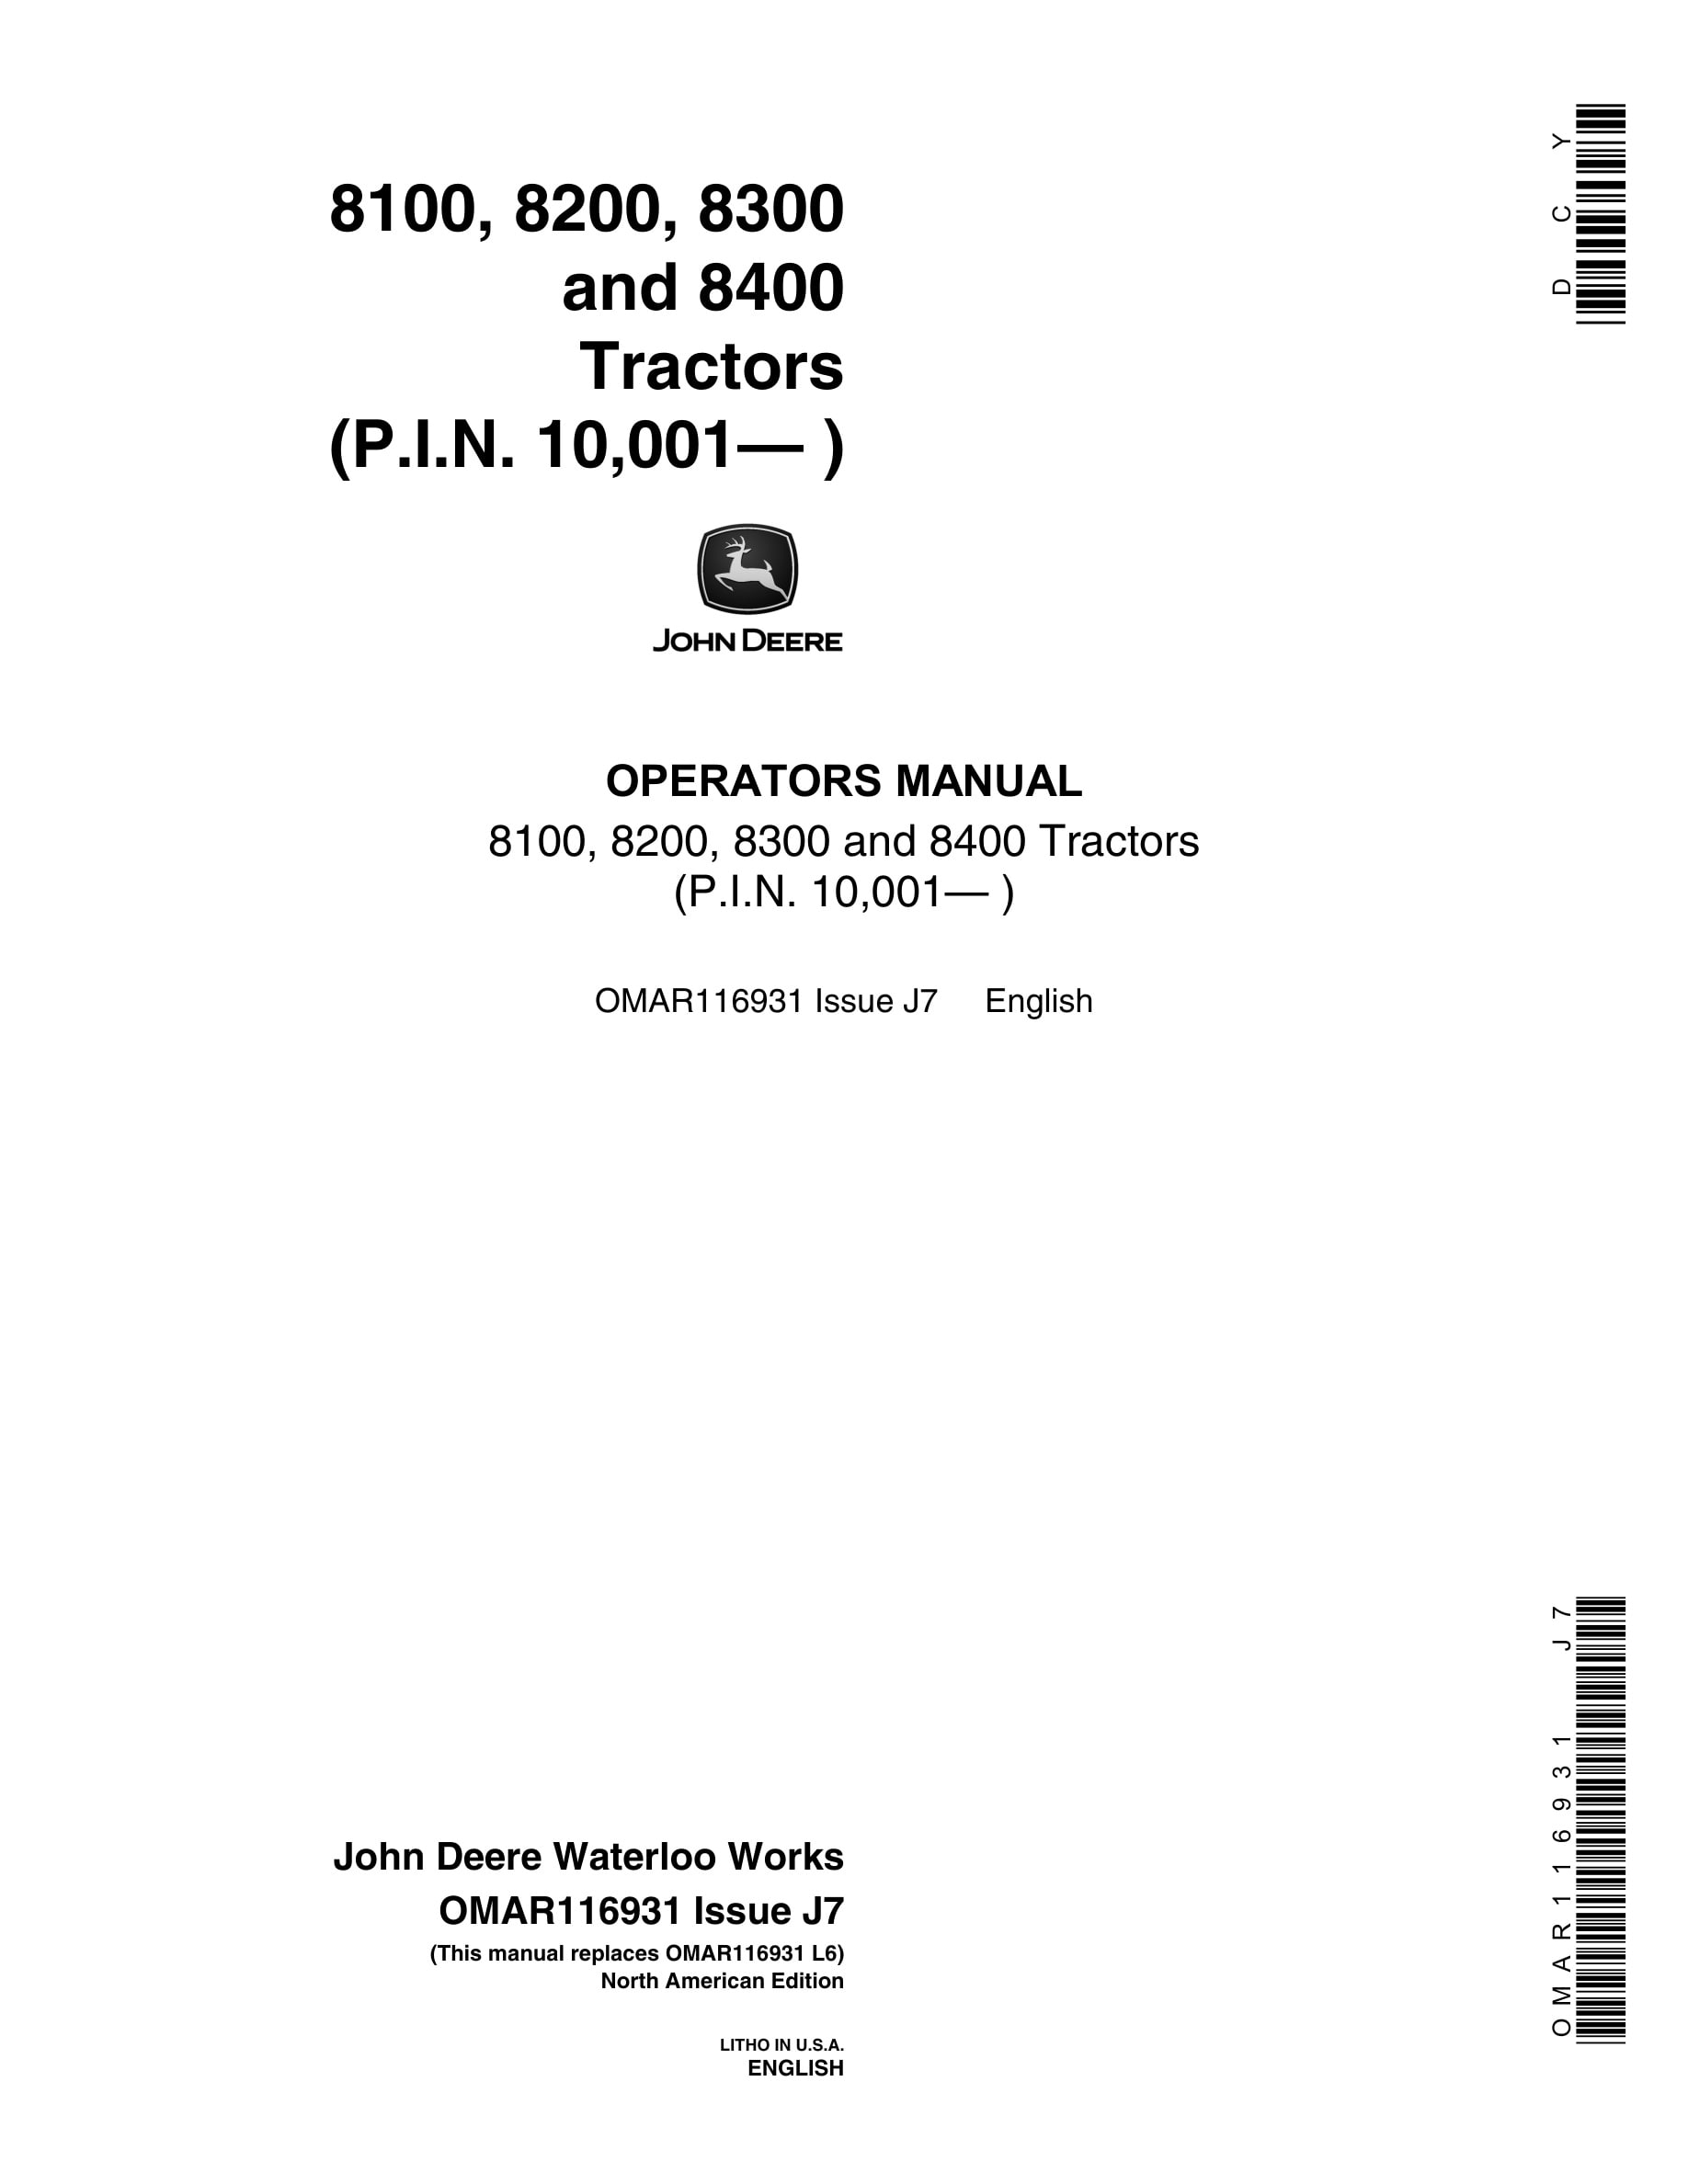 John Deere 8100, 8200, 8300 and 8400 Tractor Operator Manual OMAR116931-1